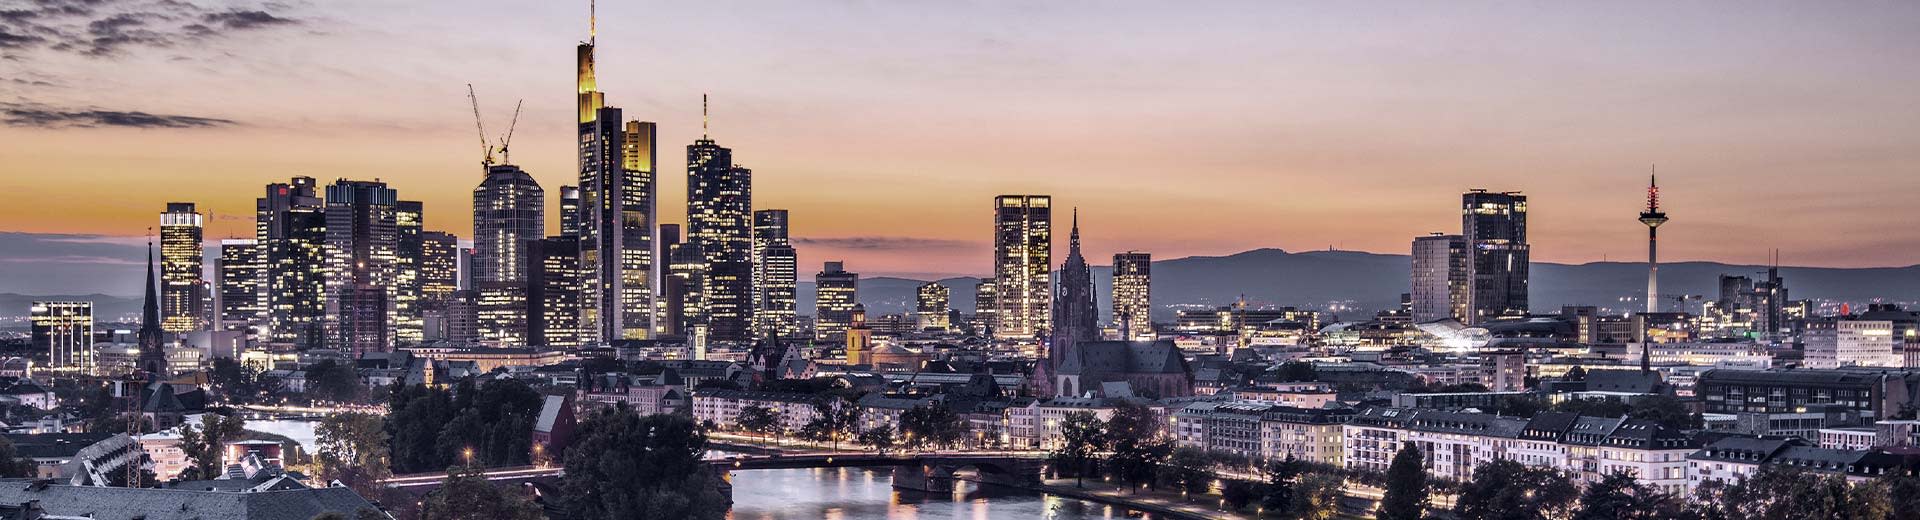 Los inminentes rascacielos del distrito financiero de Frankfurt al atardecer.